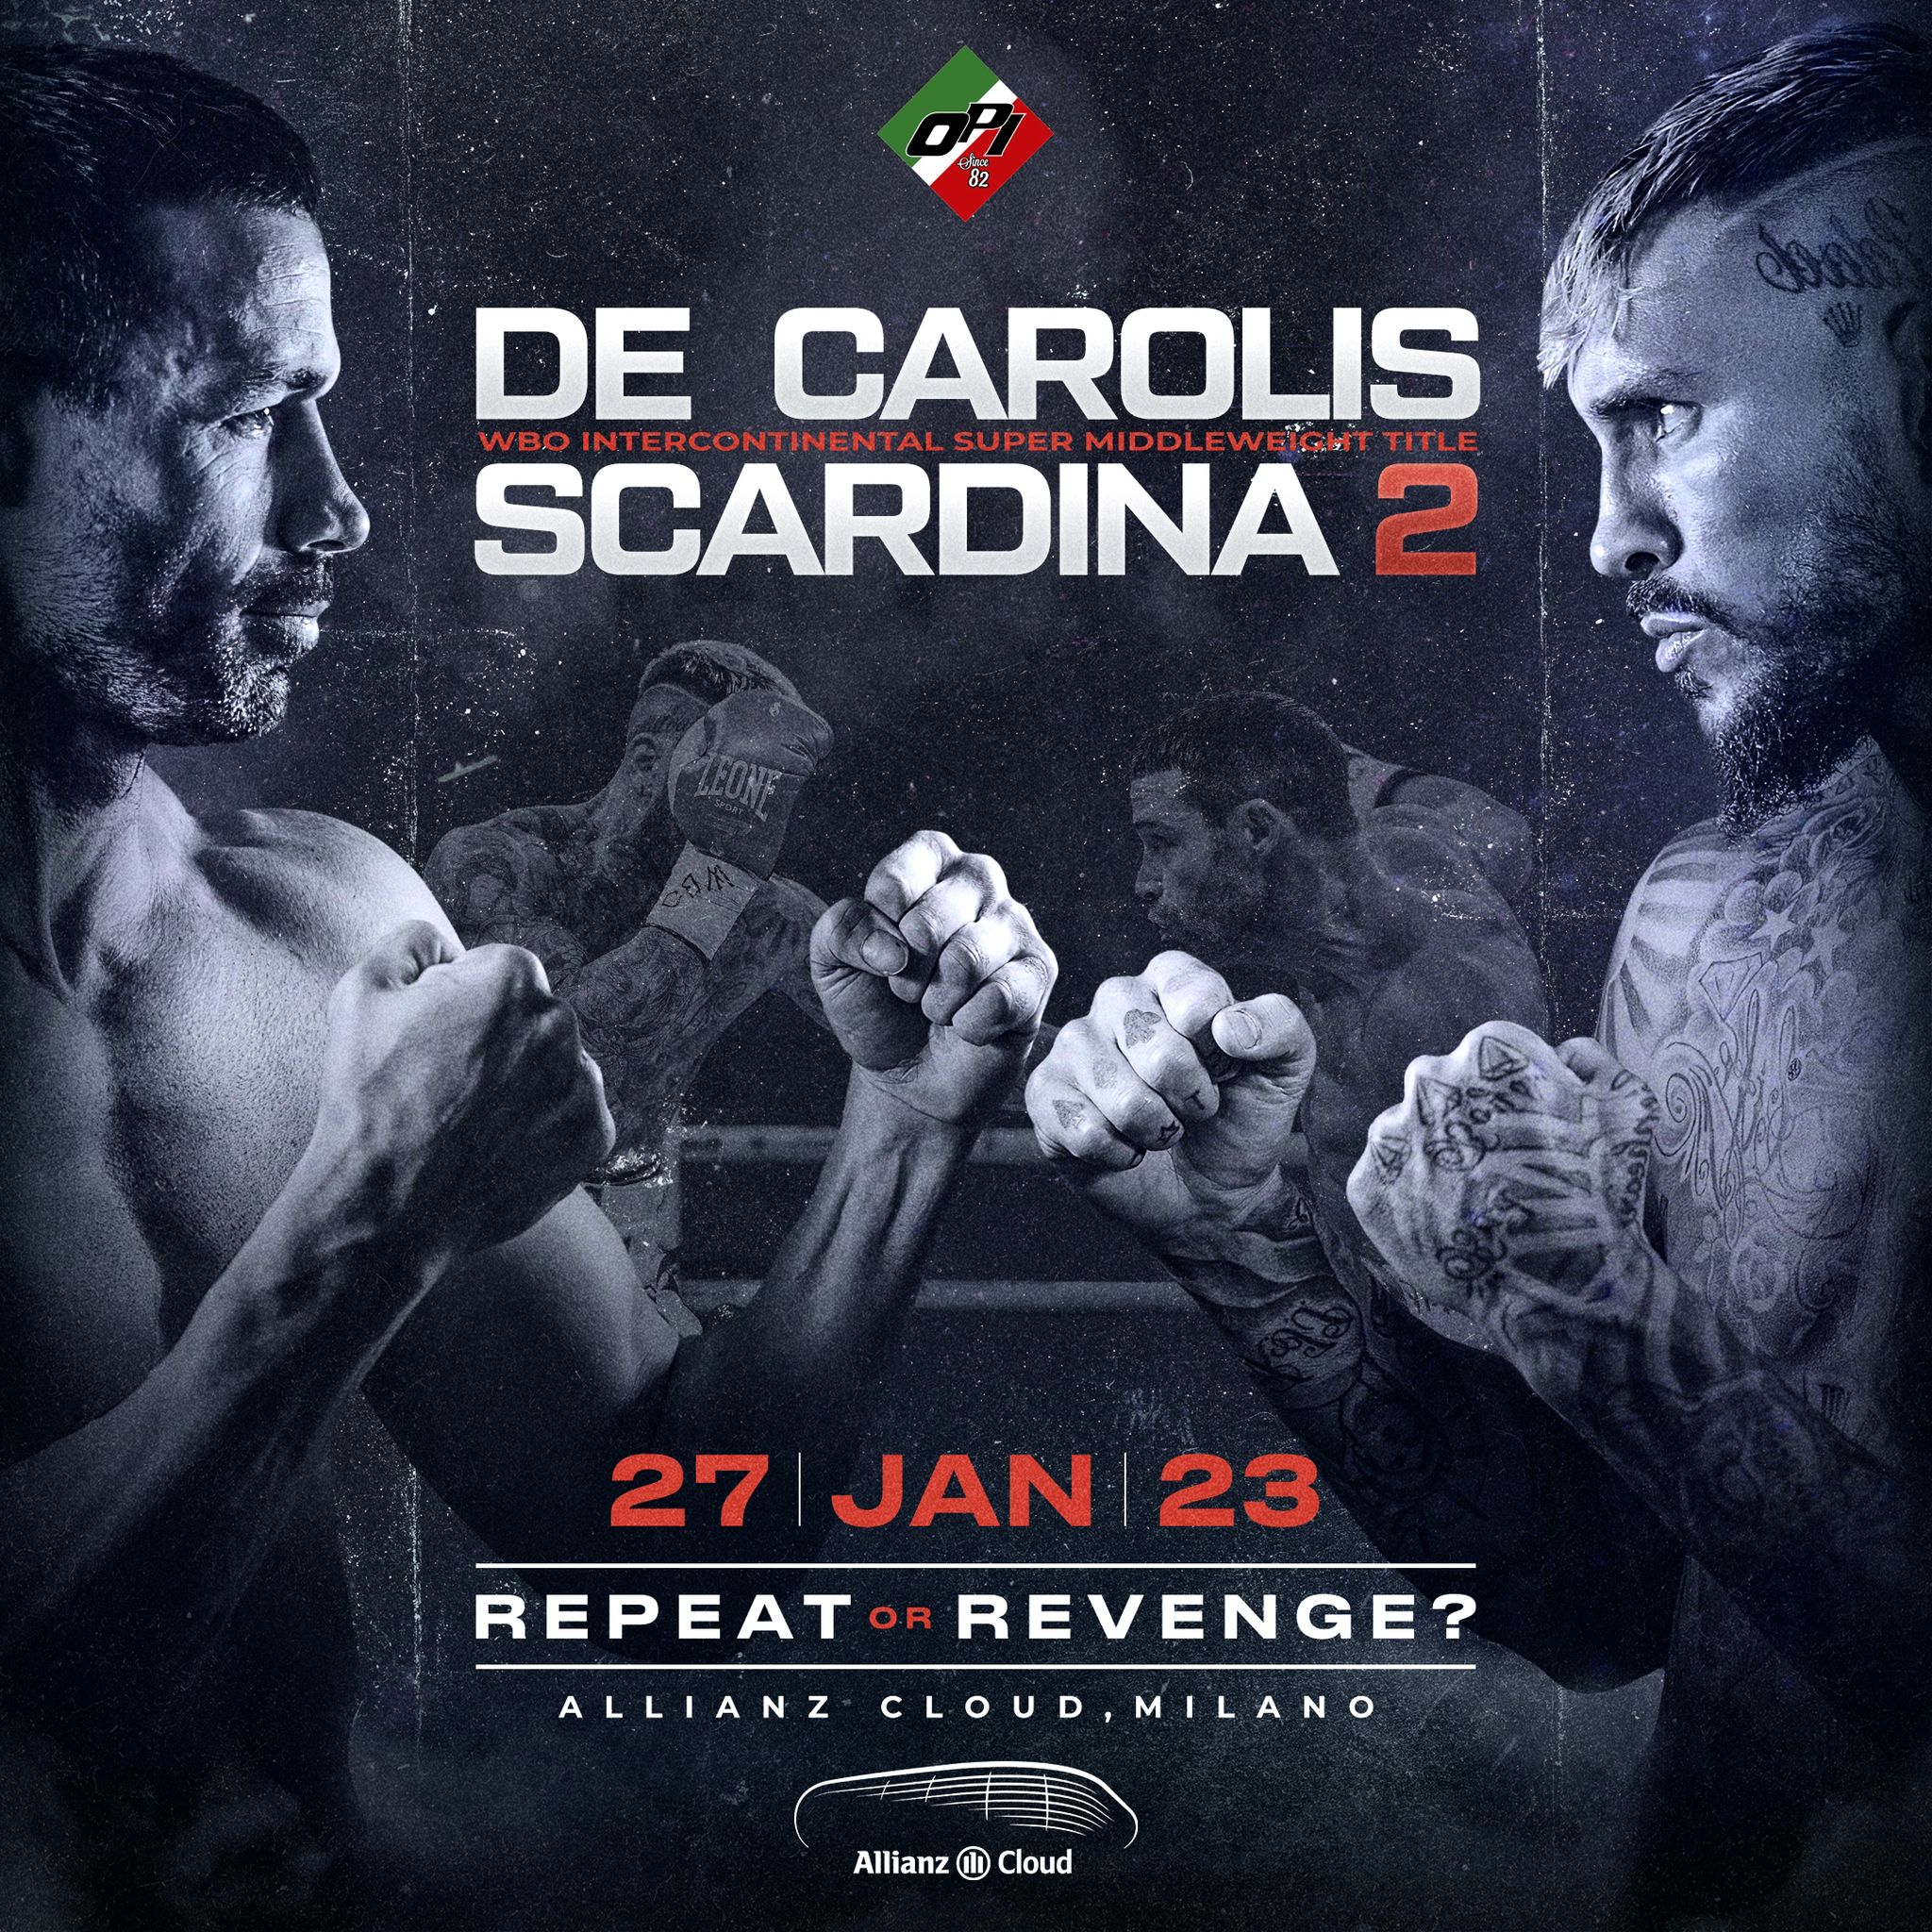 De Carolis vs Scardina - March 3 - 2 pm ET